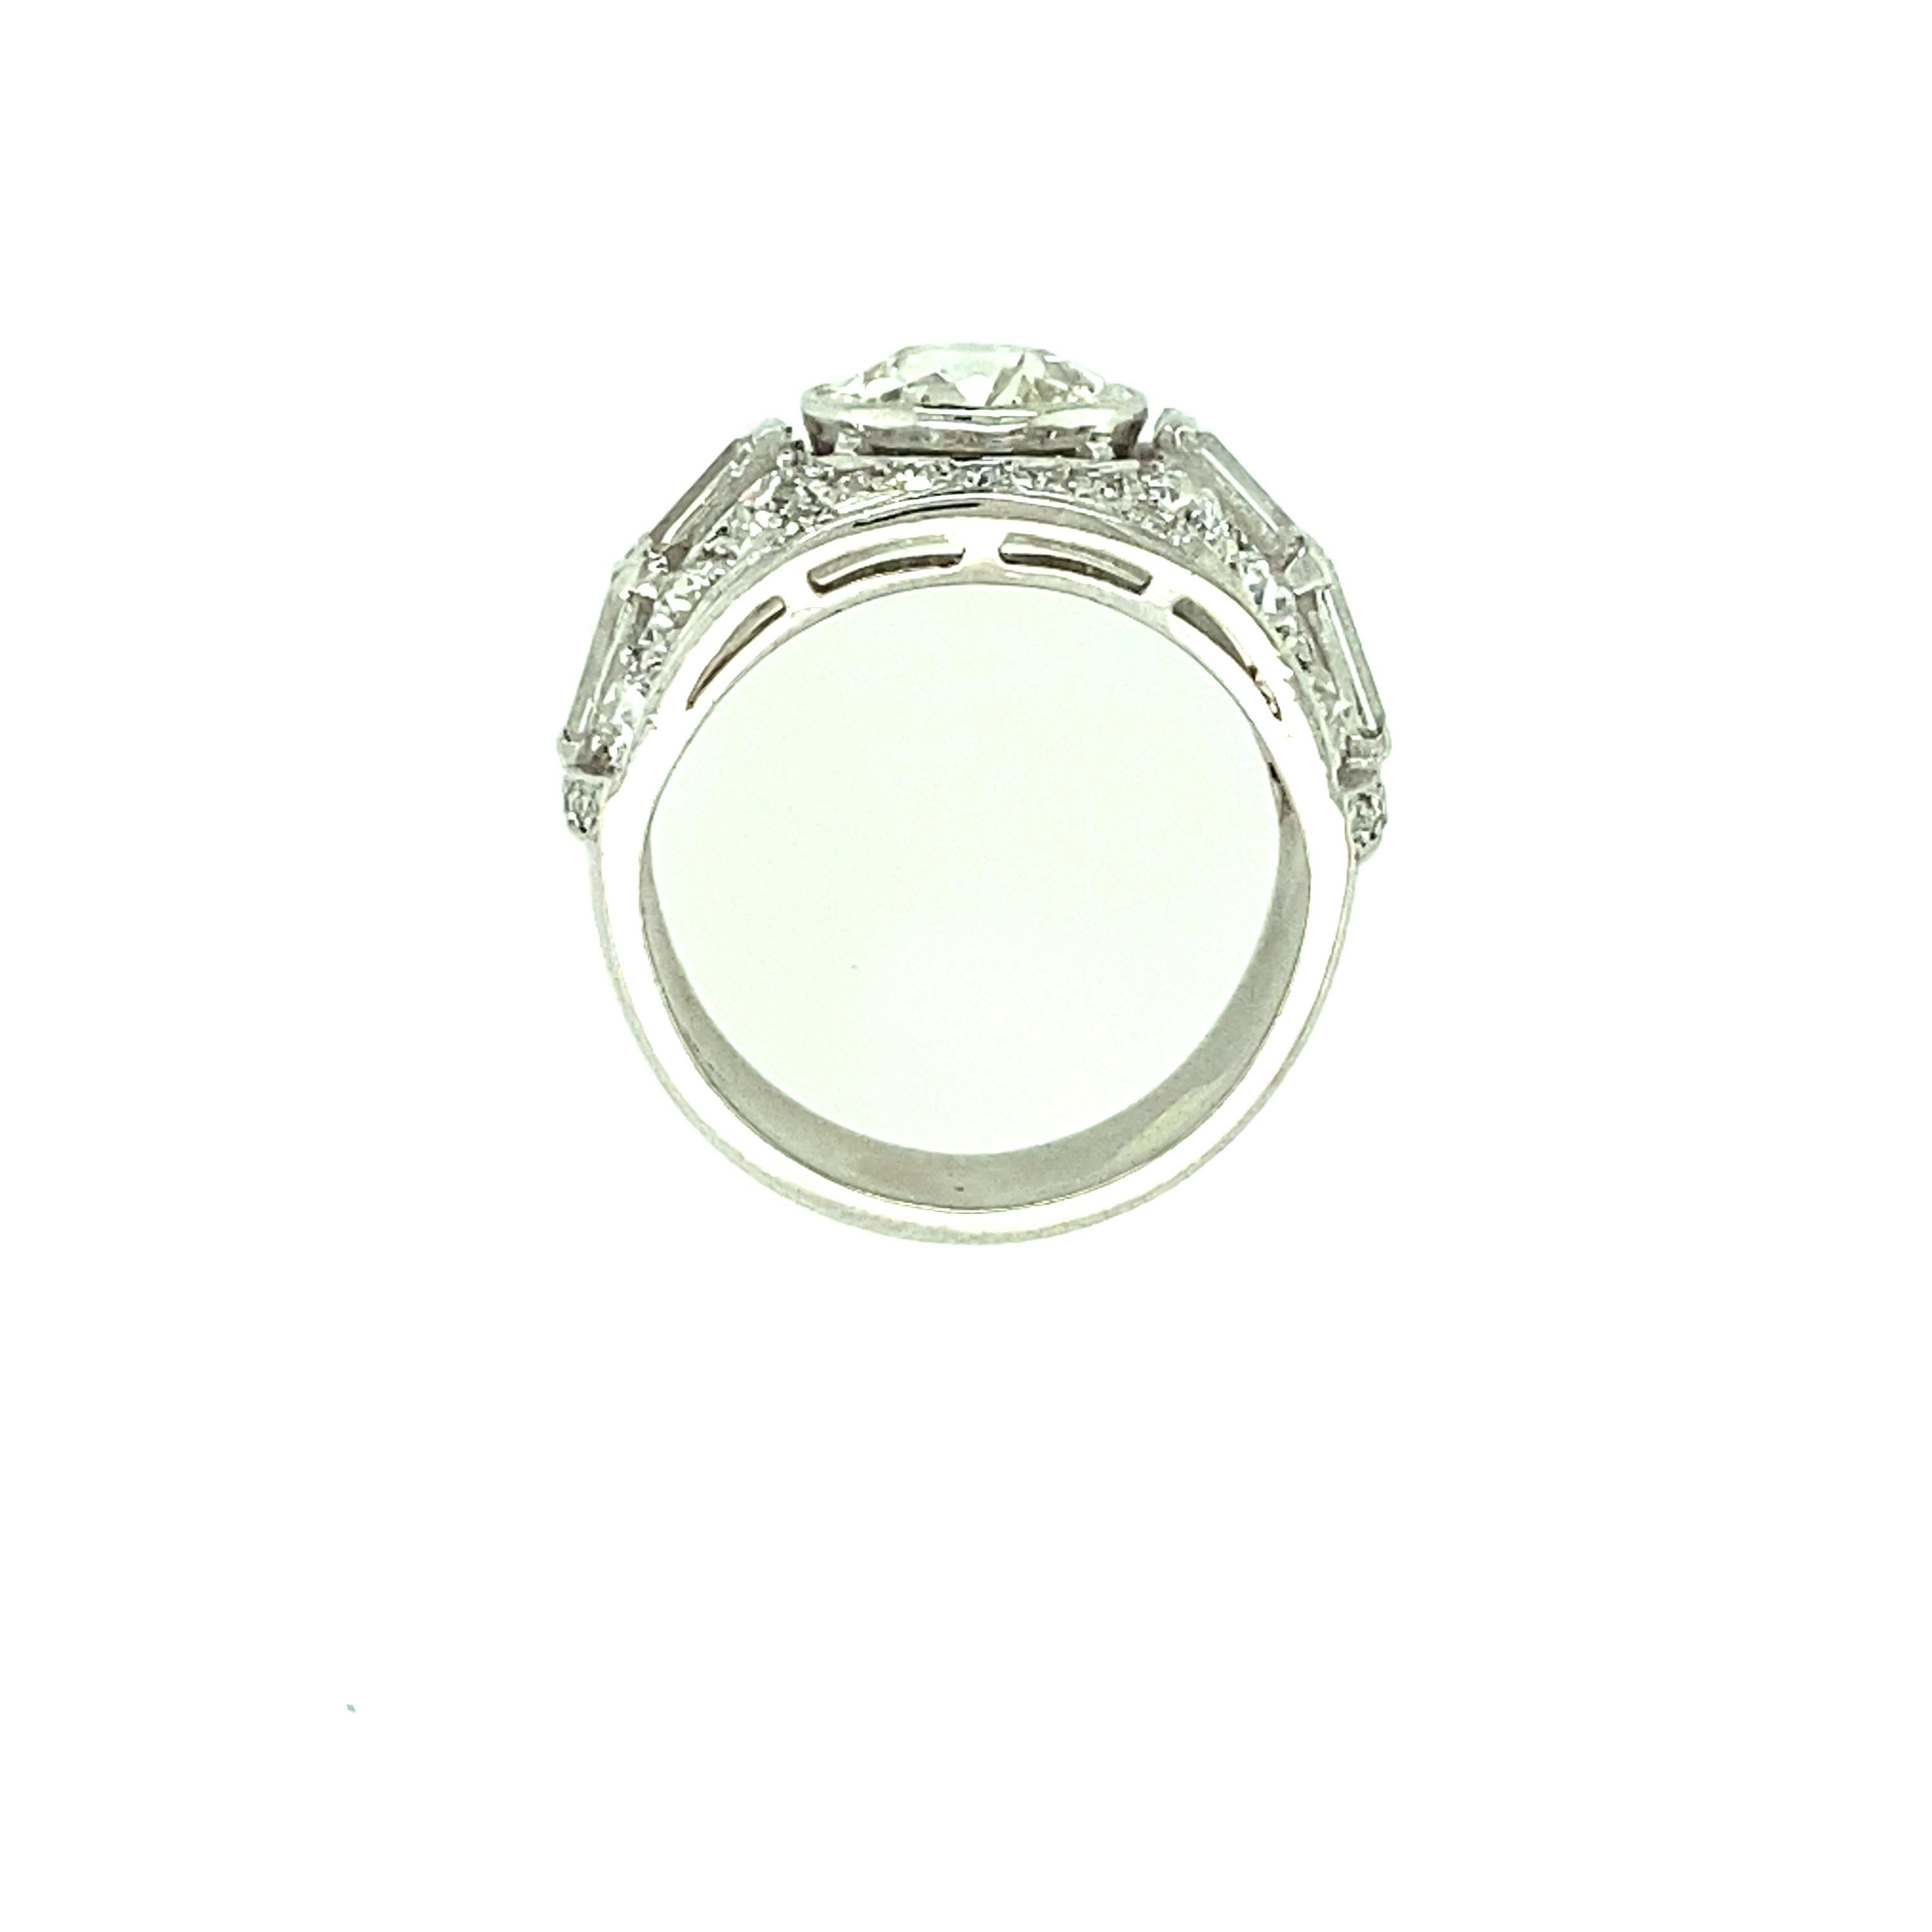 Old European Cut Platinum Diamond Engagement Ring